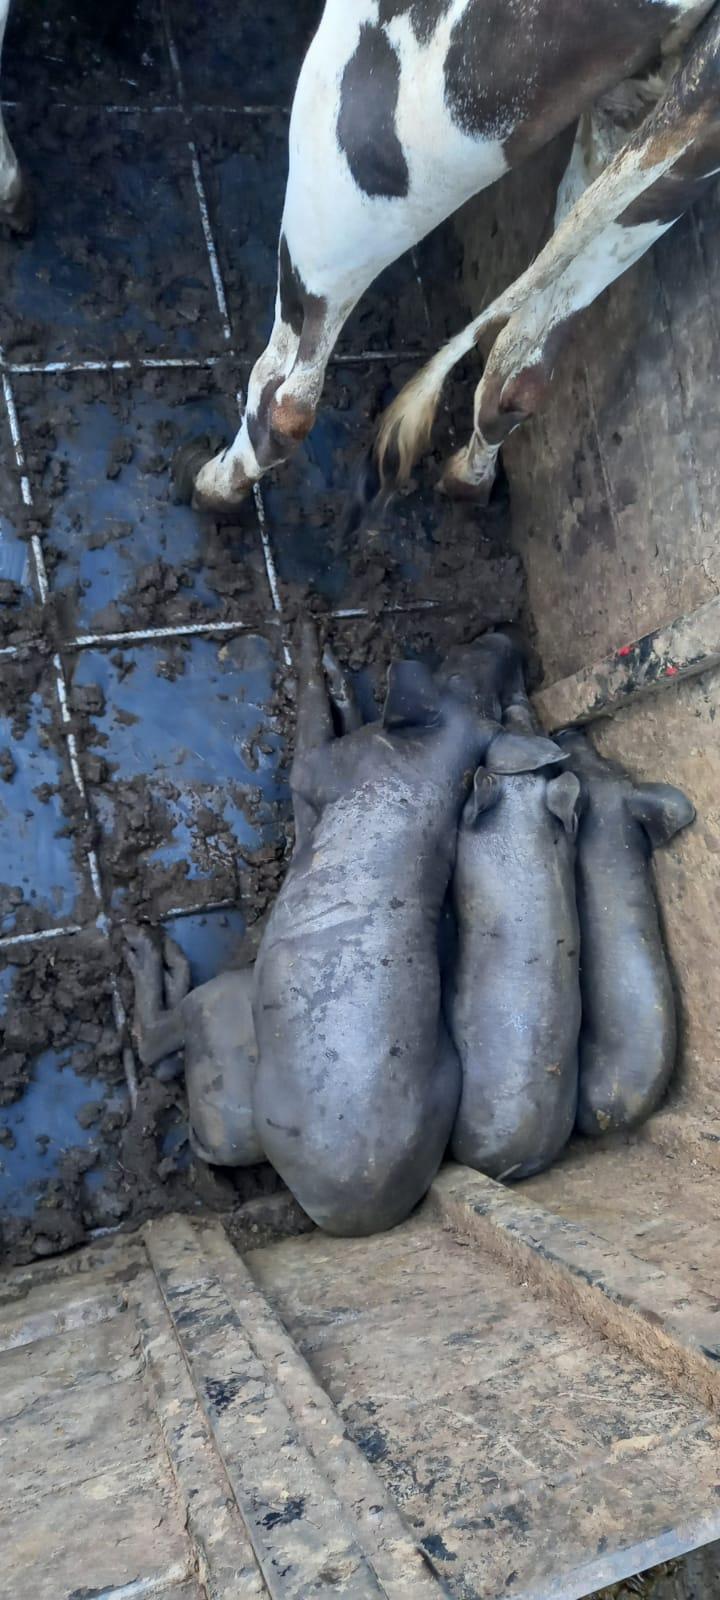 Mais lida: Polícia resgata 47 bovinos e suínos em situação de maus tratos